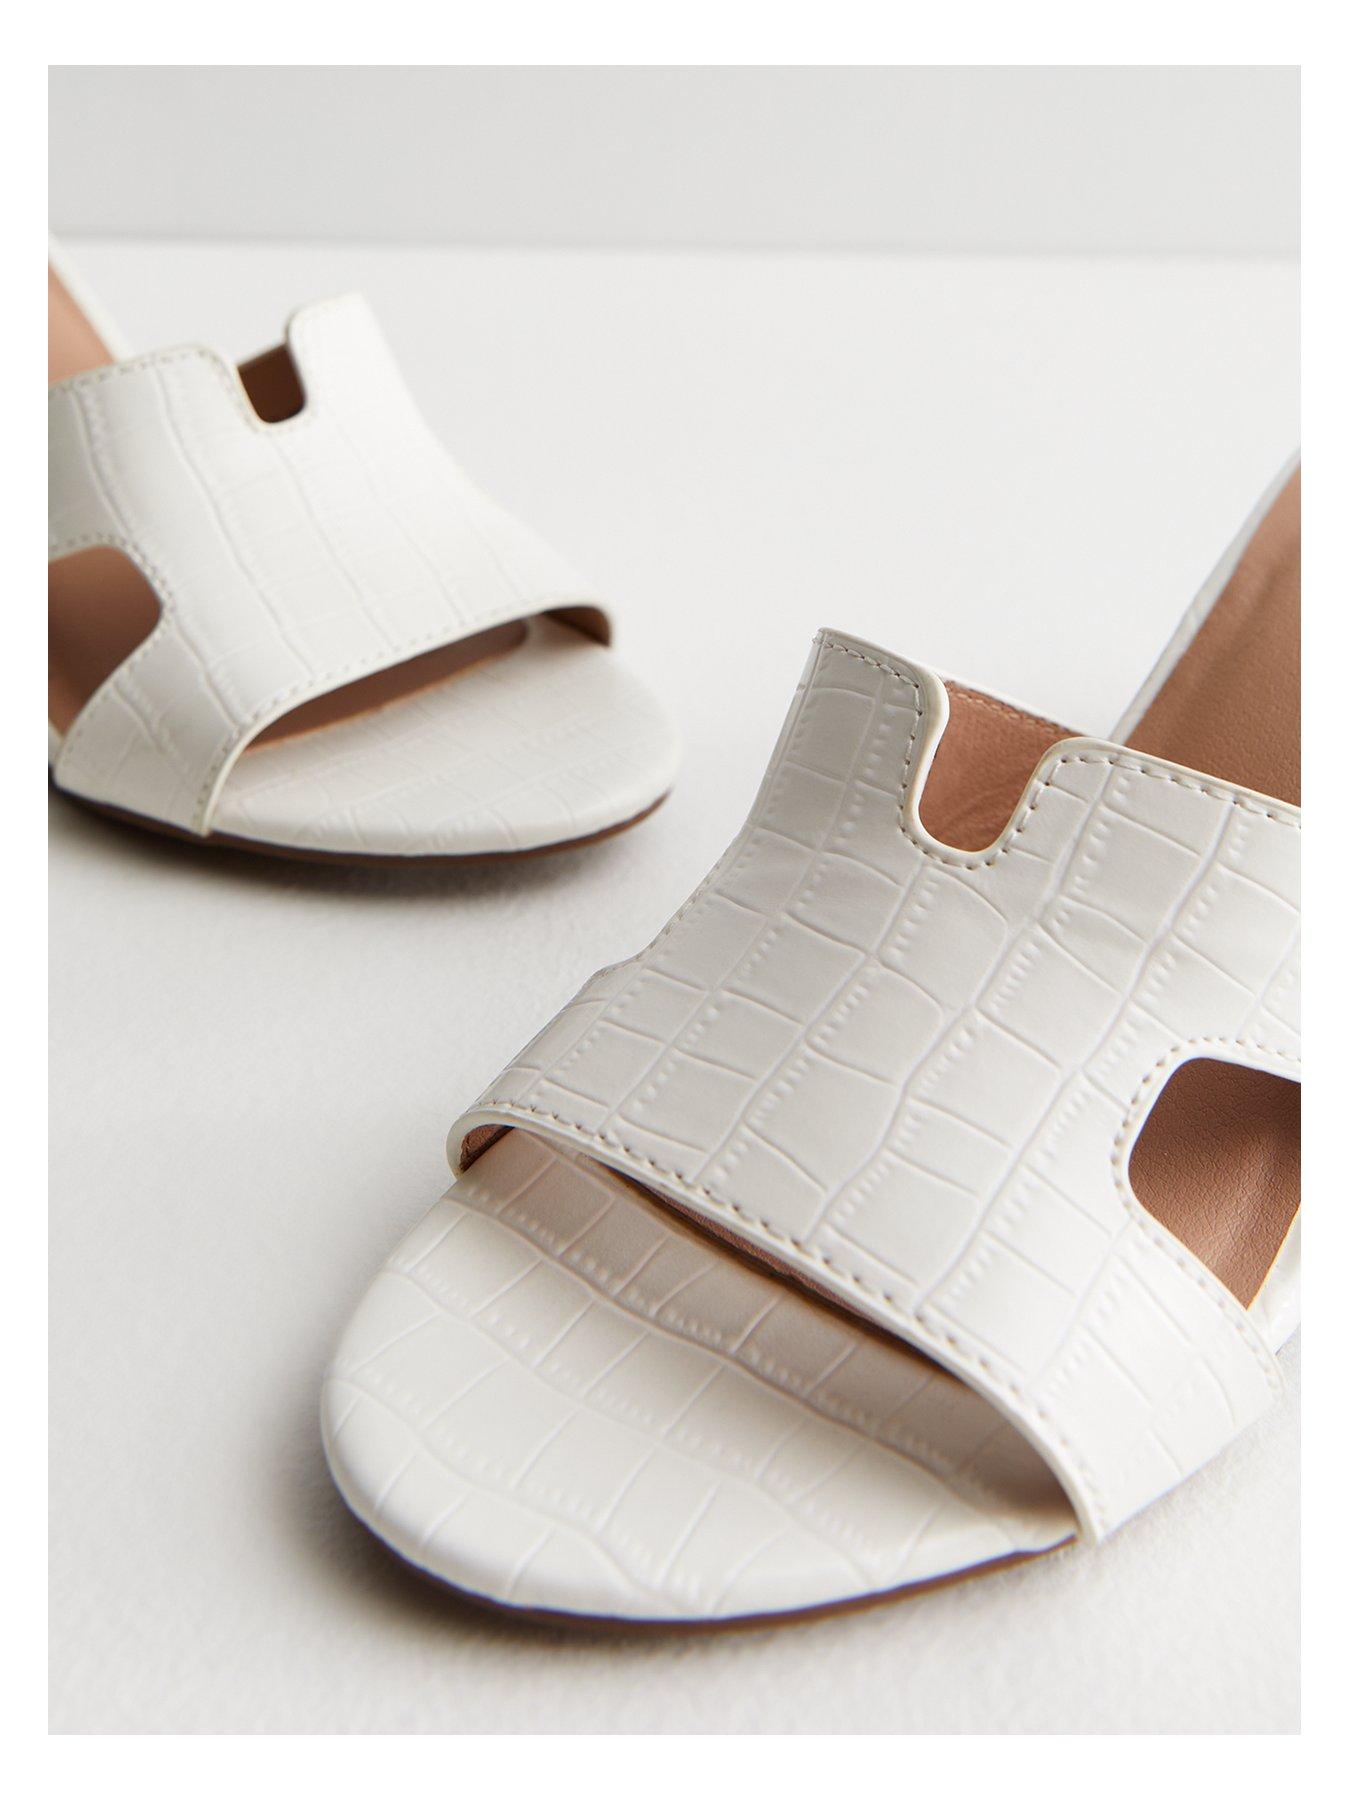 New Look White Block Heel Mule Sandals